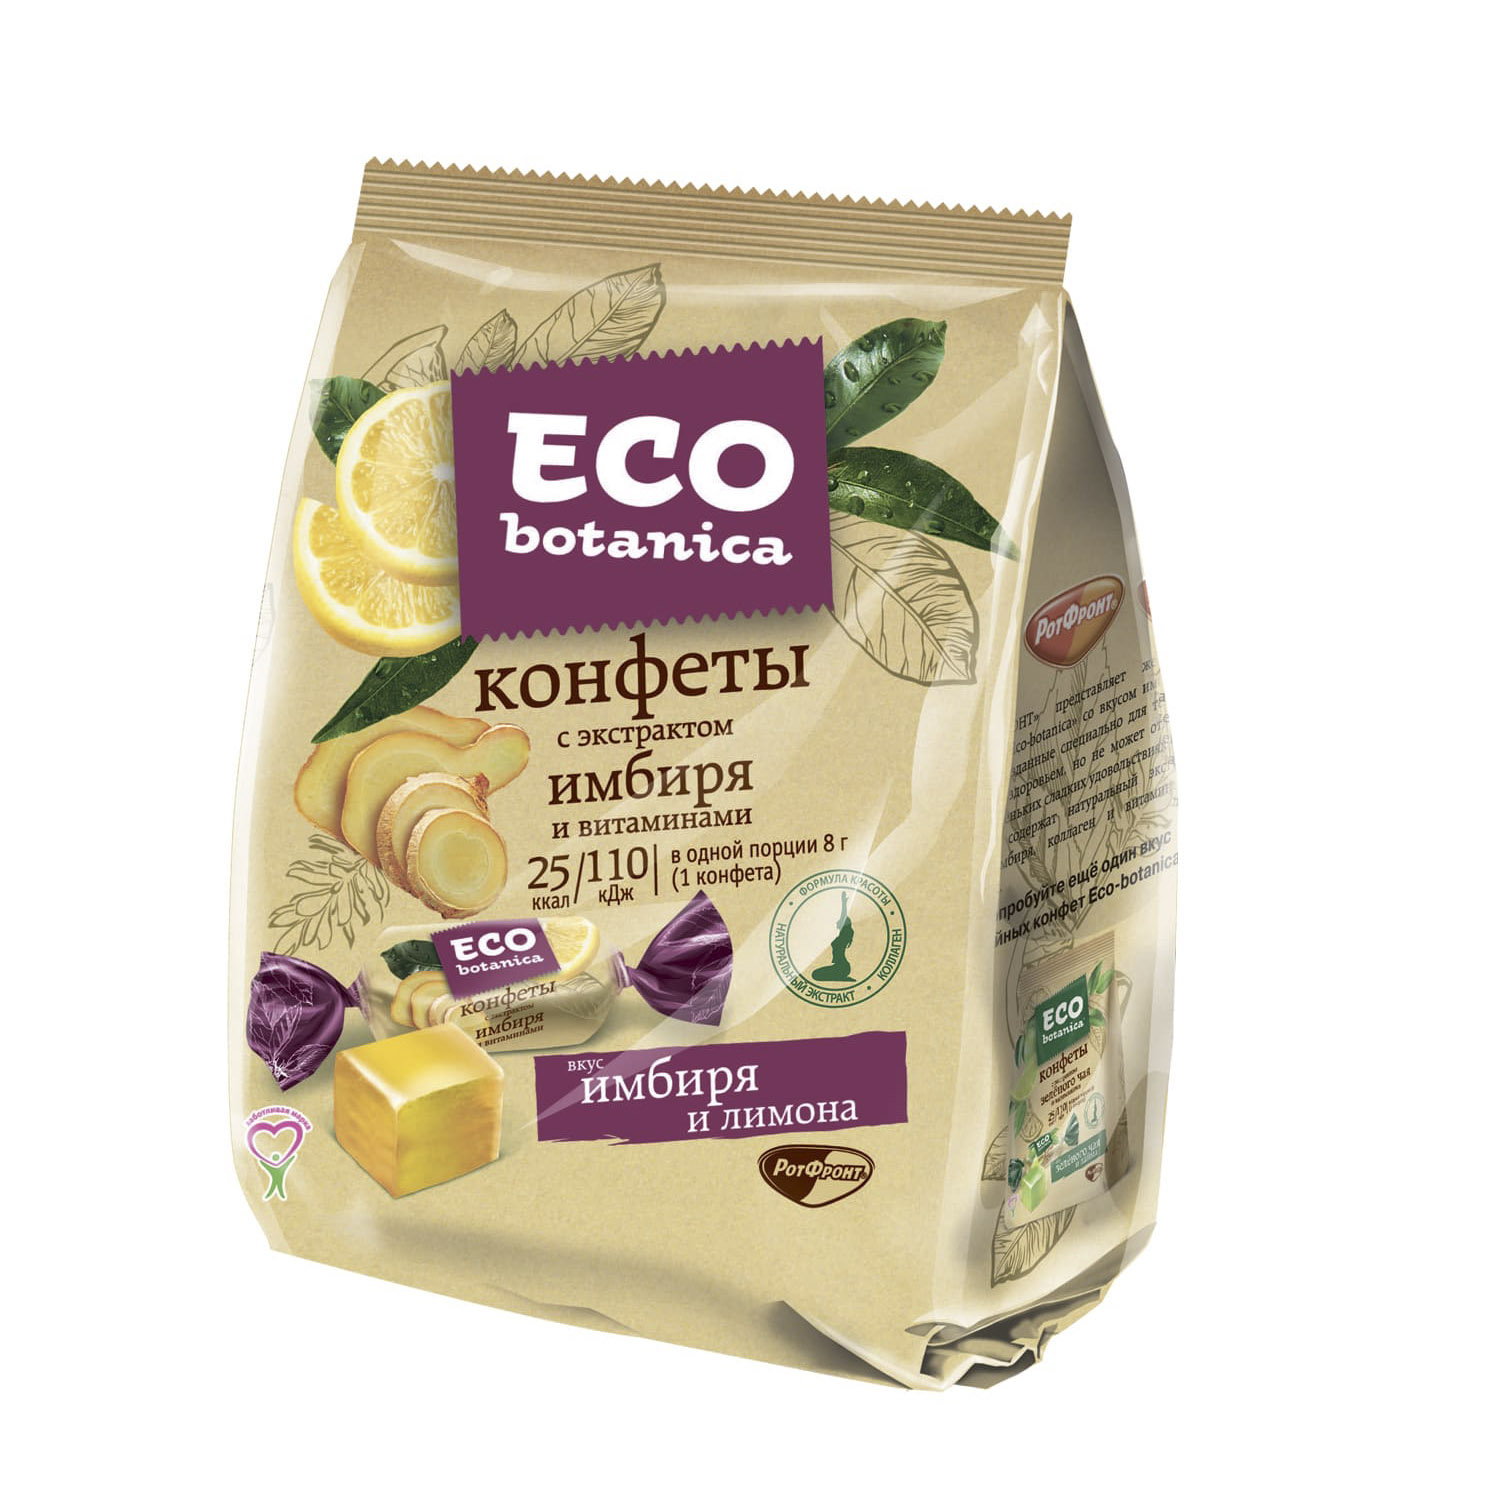 Конфеты Eco botanica с экстрактом имбиря и витаминами 200 г конфеты eco botanica смузи ананас манго 150 г